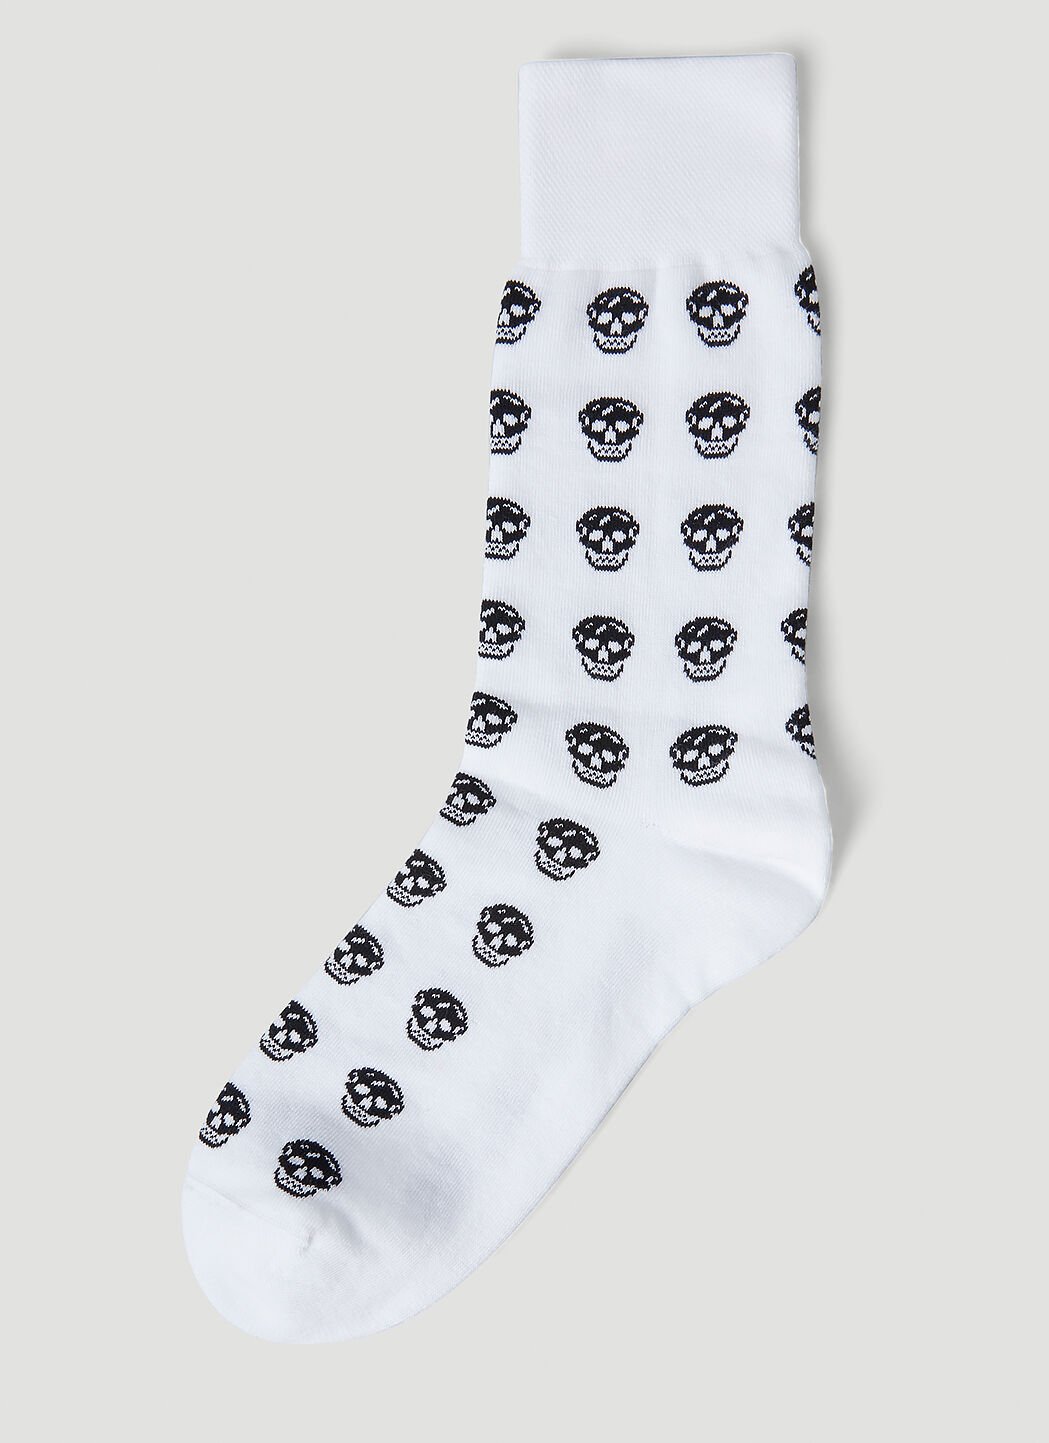 Alexander McQueen Skull Motif Socks Black amq0152016